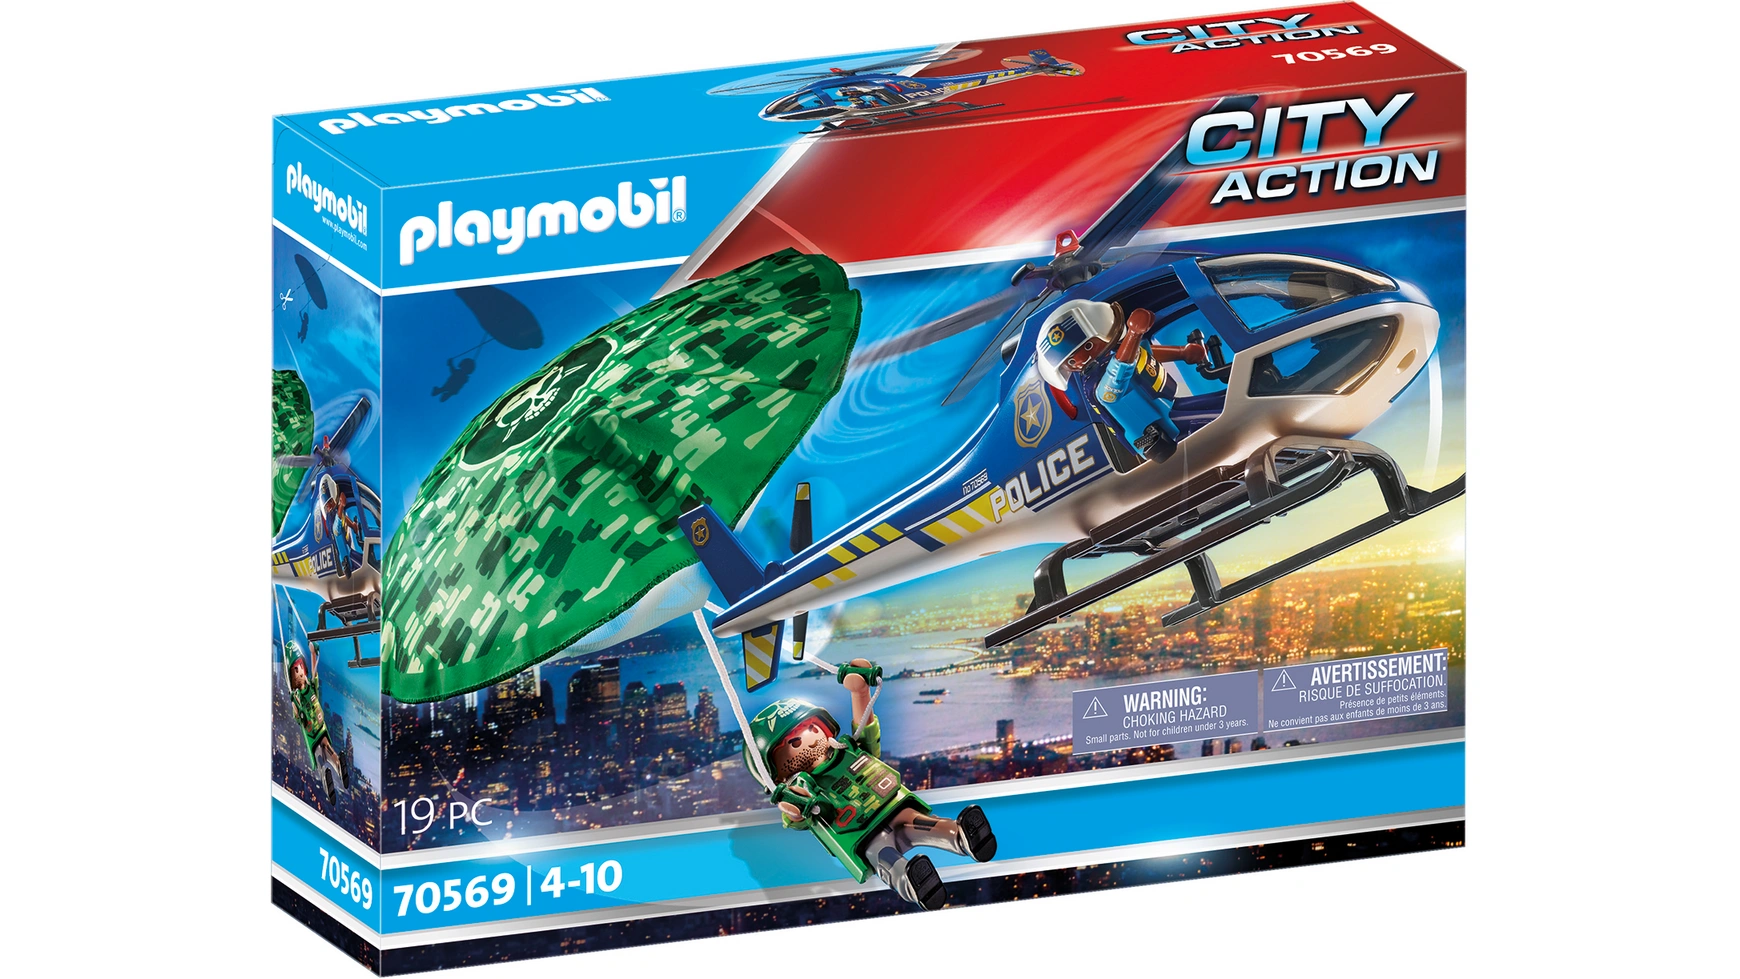 City action полицейский вертолет: погоня с парашютом Playmobil city action полицейский блокпост playmobil